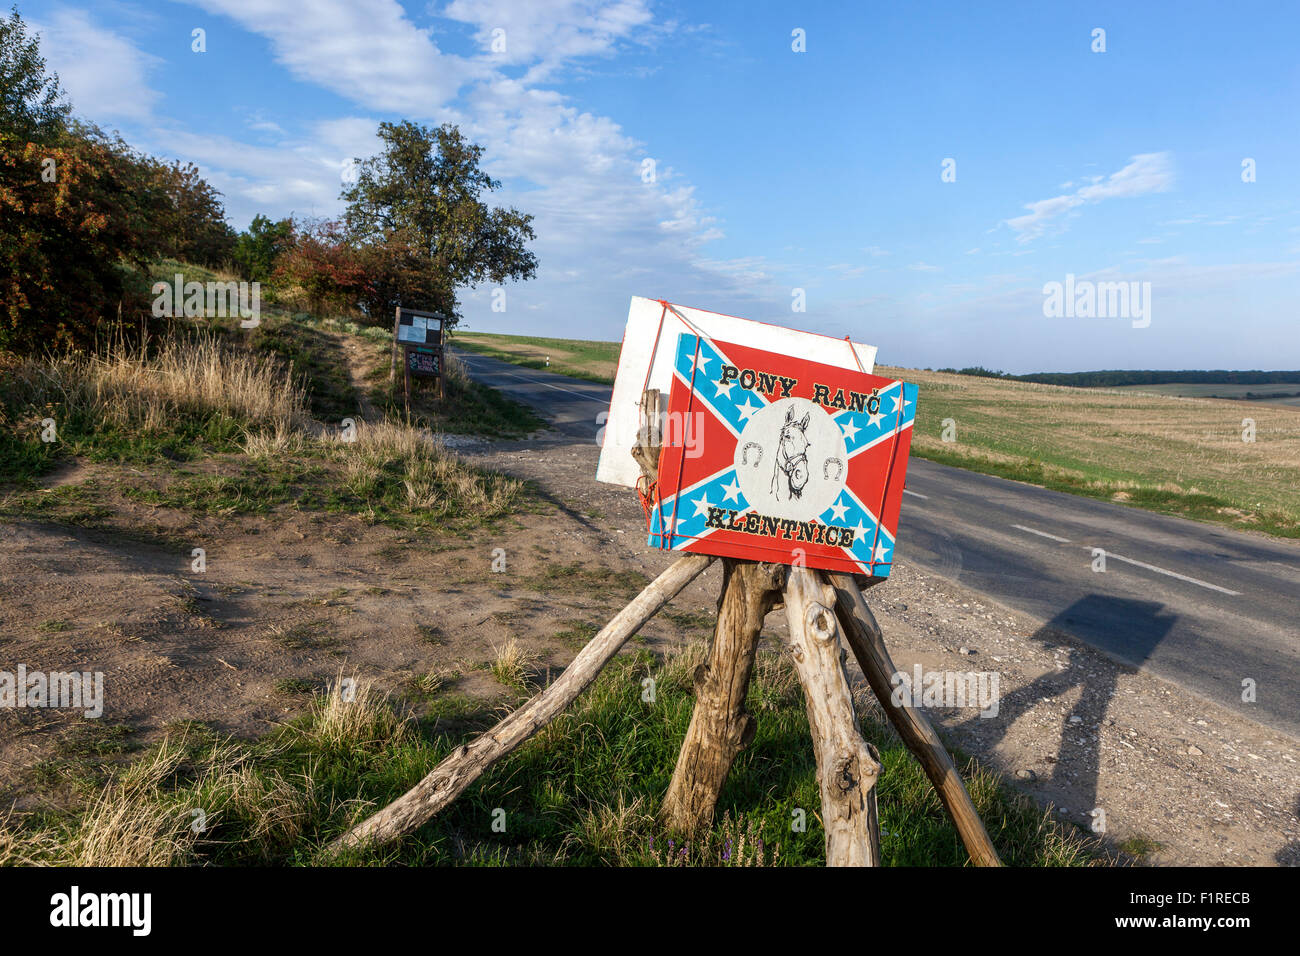 Pony ranch dans Klentnice, signe, paysage, South Moravia, République Tchèque Banque D'Images